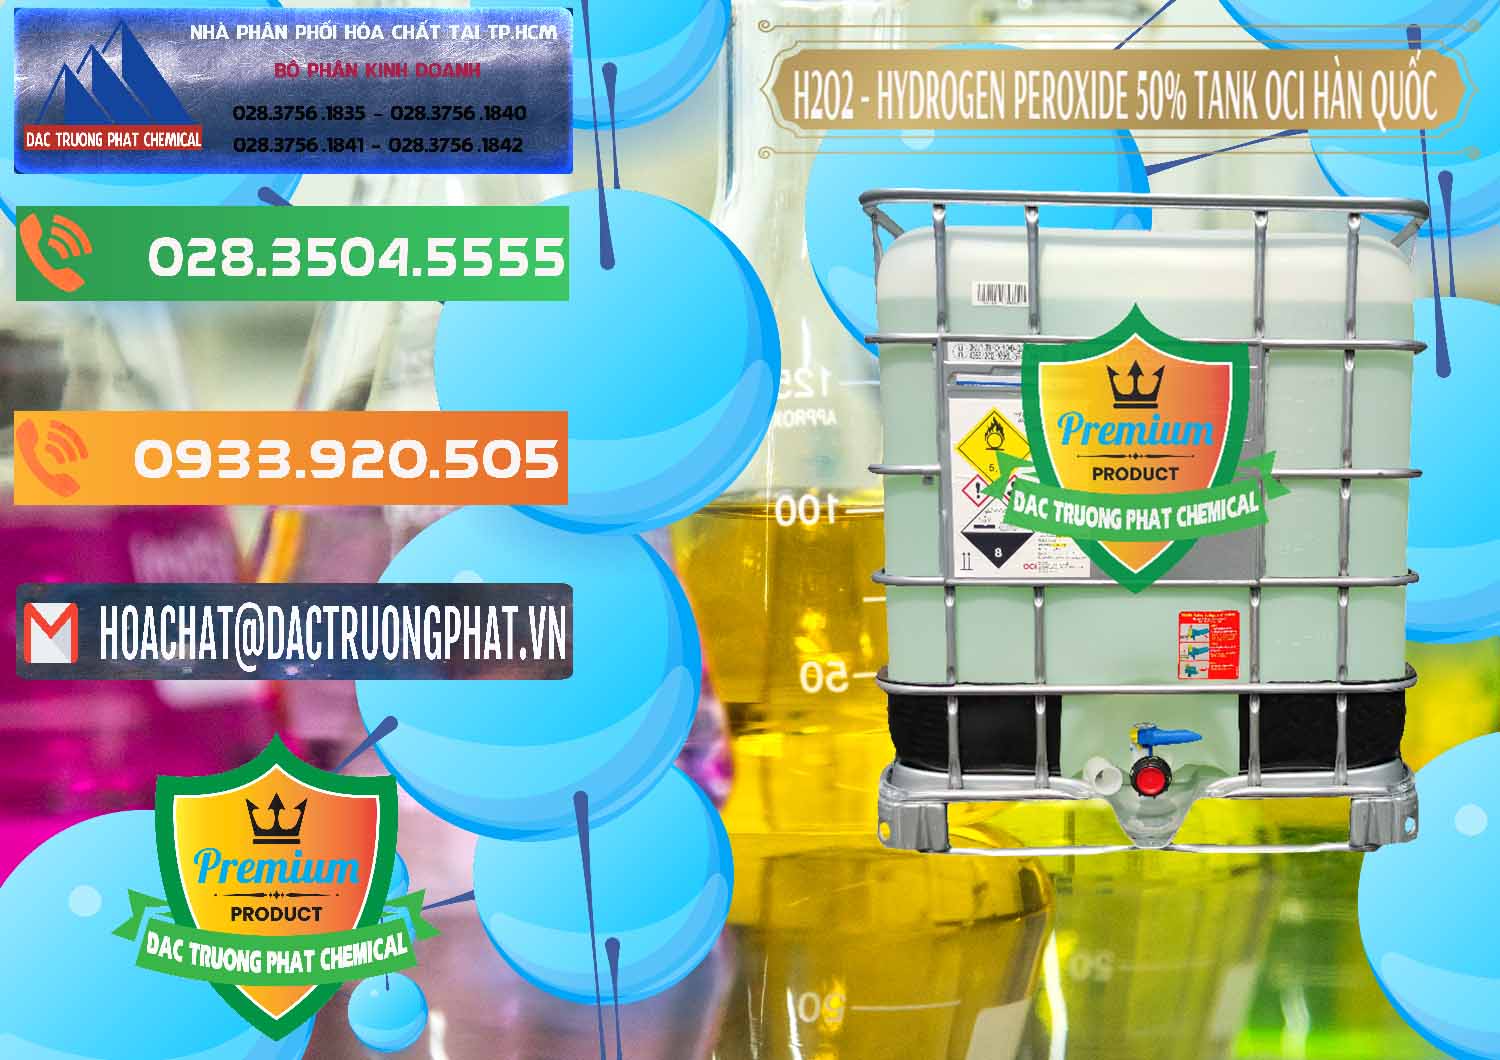 Chuyên cung cấp _ bán H2O2 - Hydrogen Peroxide 50% Tank IBC Bồn Hàn Quốc OCI - 0074 - Nhà phân phối ( nhập khẩu ) hóa chất tại TP.HCM - hoachatxulynuoc.com.vn